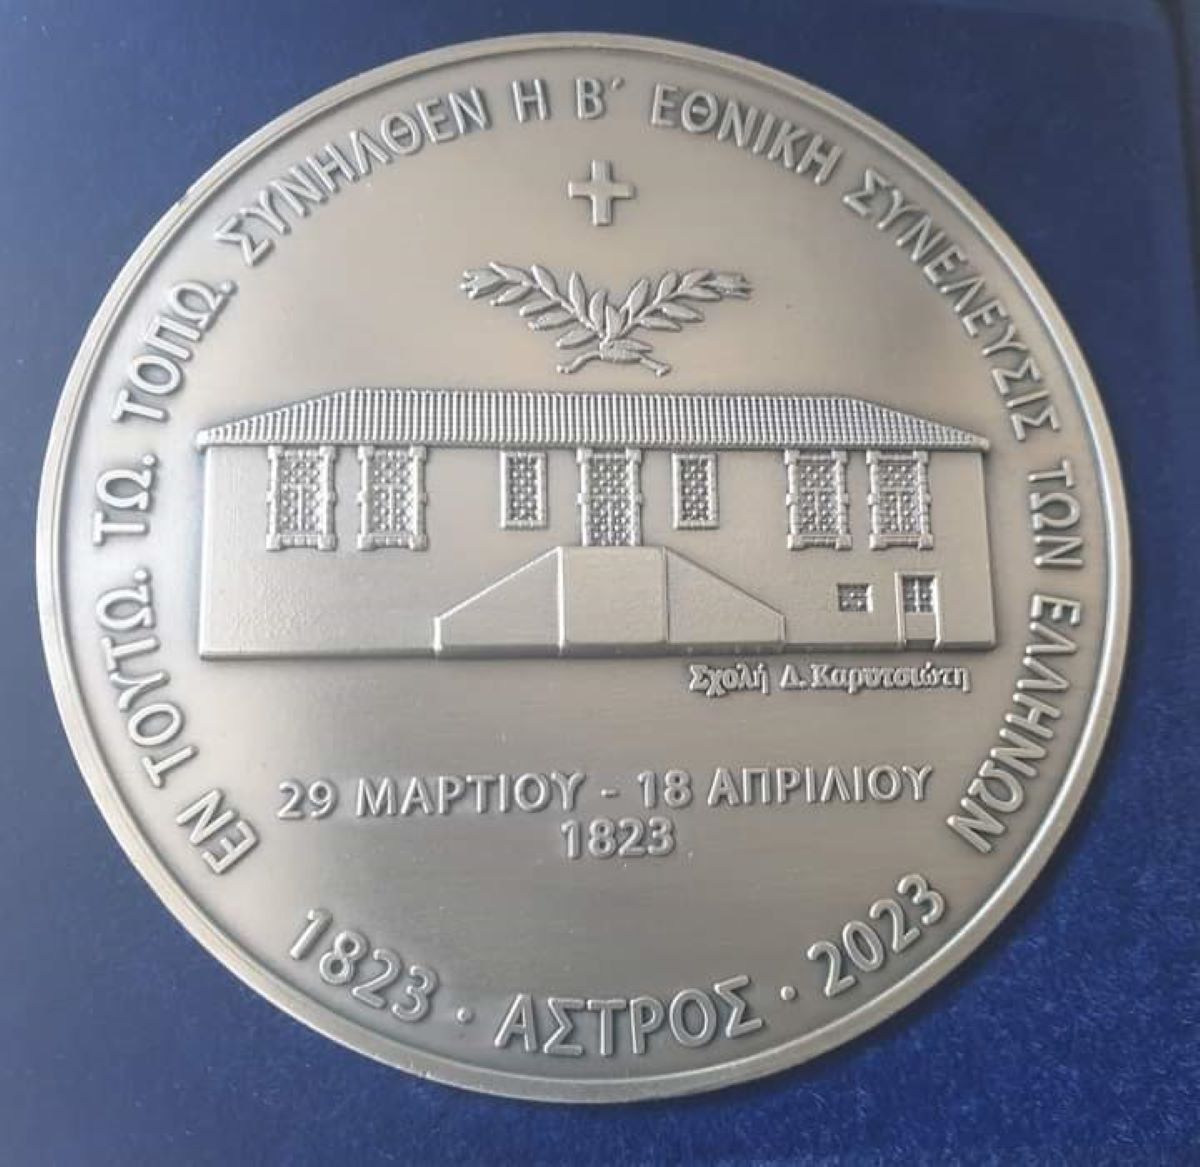 Συλλεκτικό, αναμνηστικό μετάλλιο με αφορμή τα 200 χρόνια από την σύγκληση της Β’ Εθνοσυνέλευσης στο Άστρος Κυνουρίας